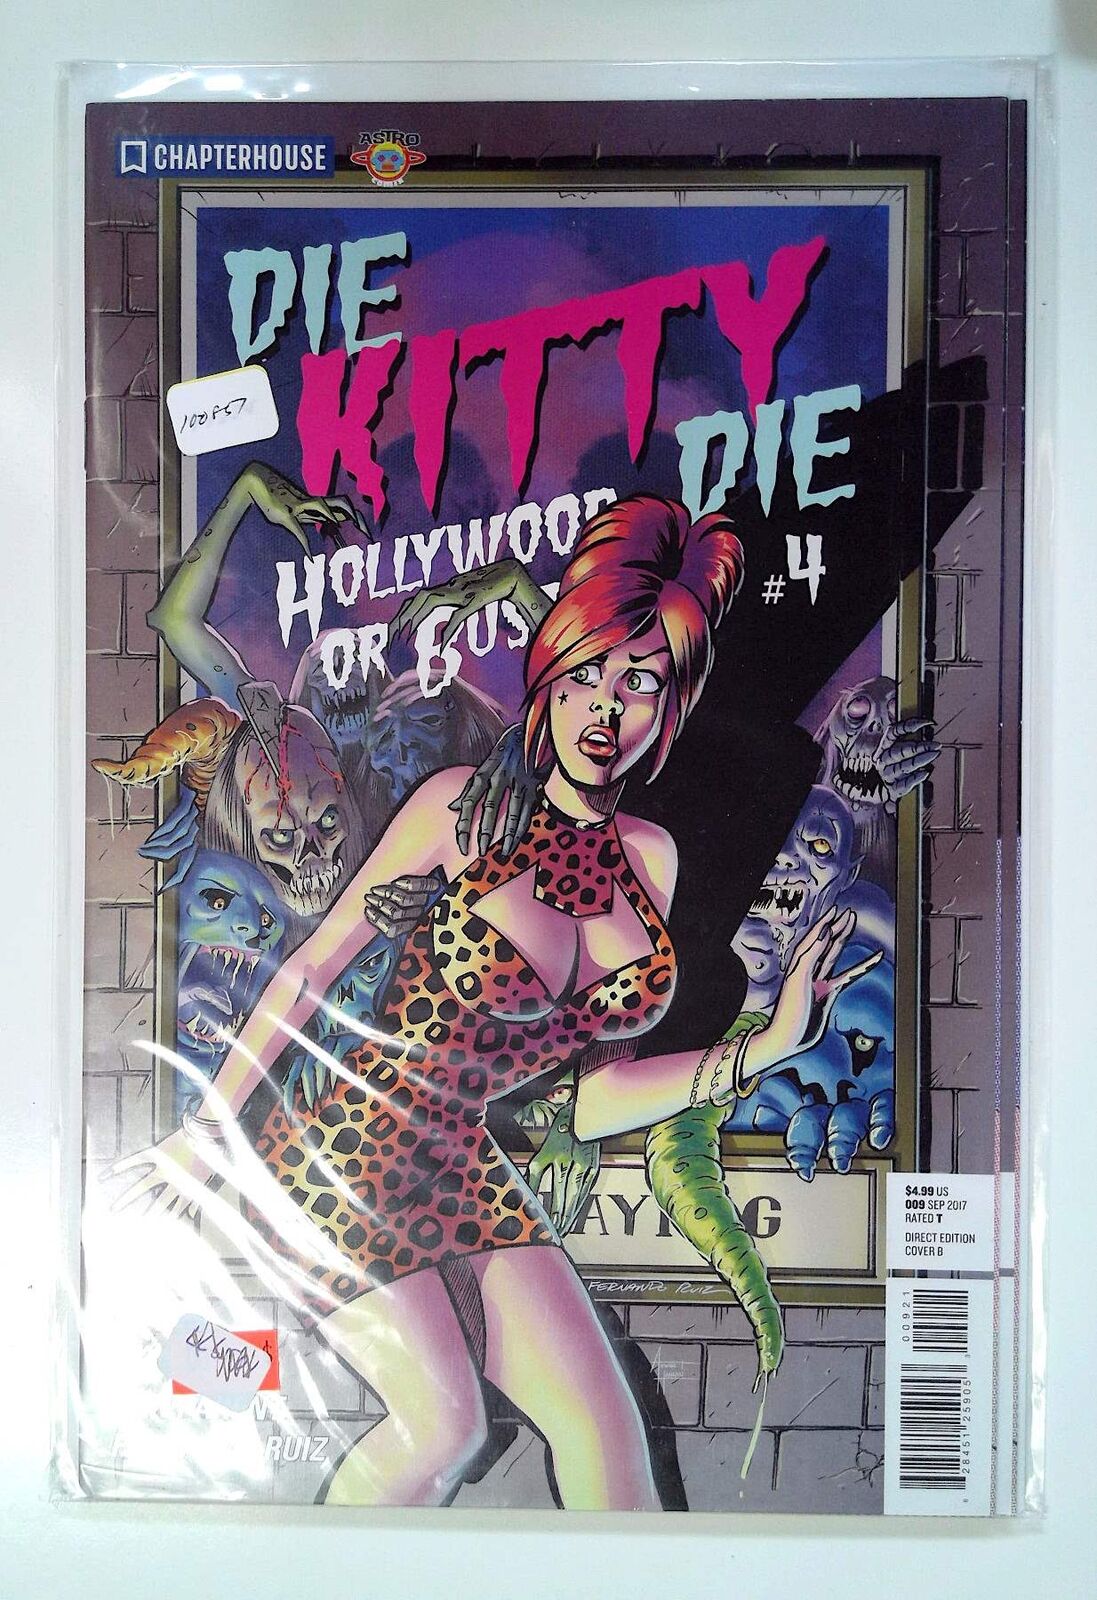 Die Kitty Die: Hollywood or Bust #4 b Chapterhouse (2017) Comic Book